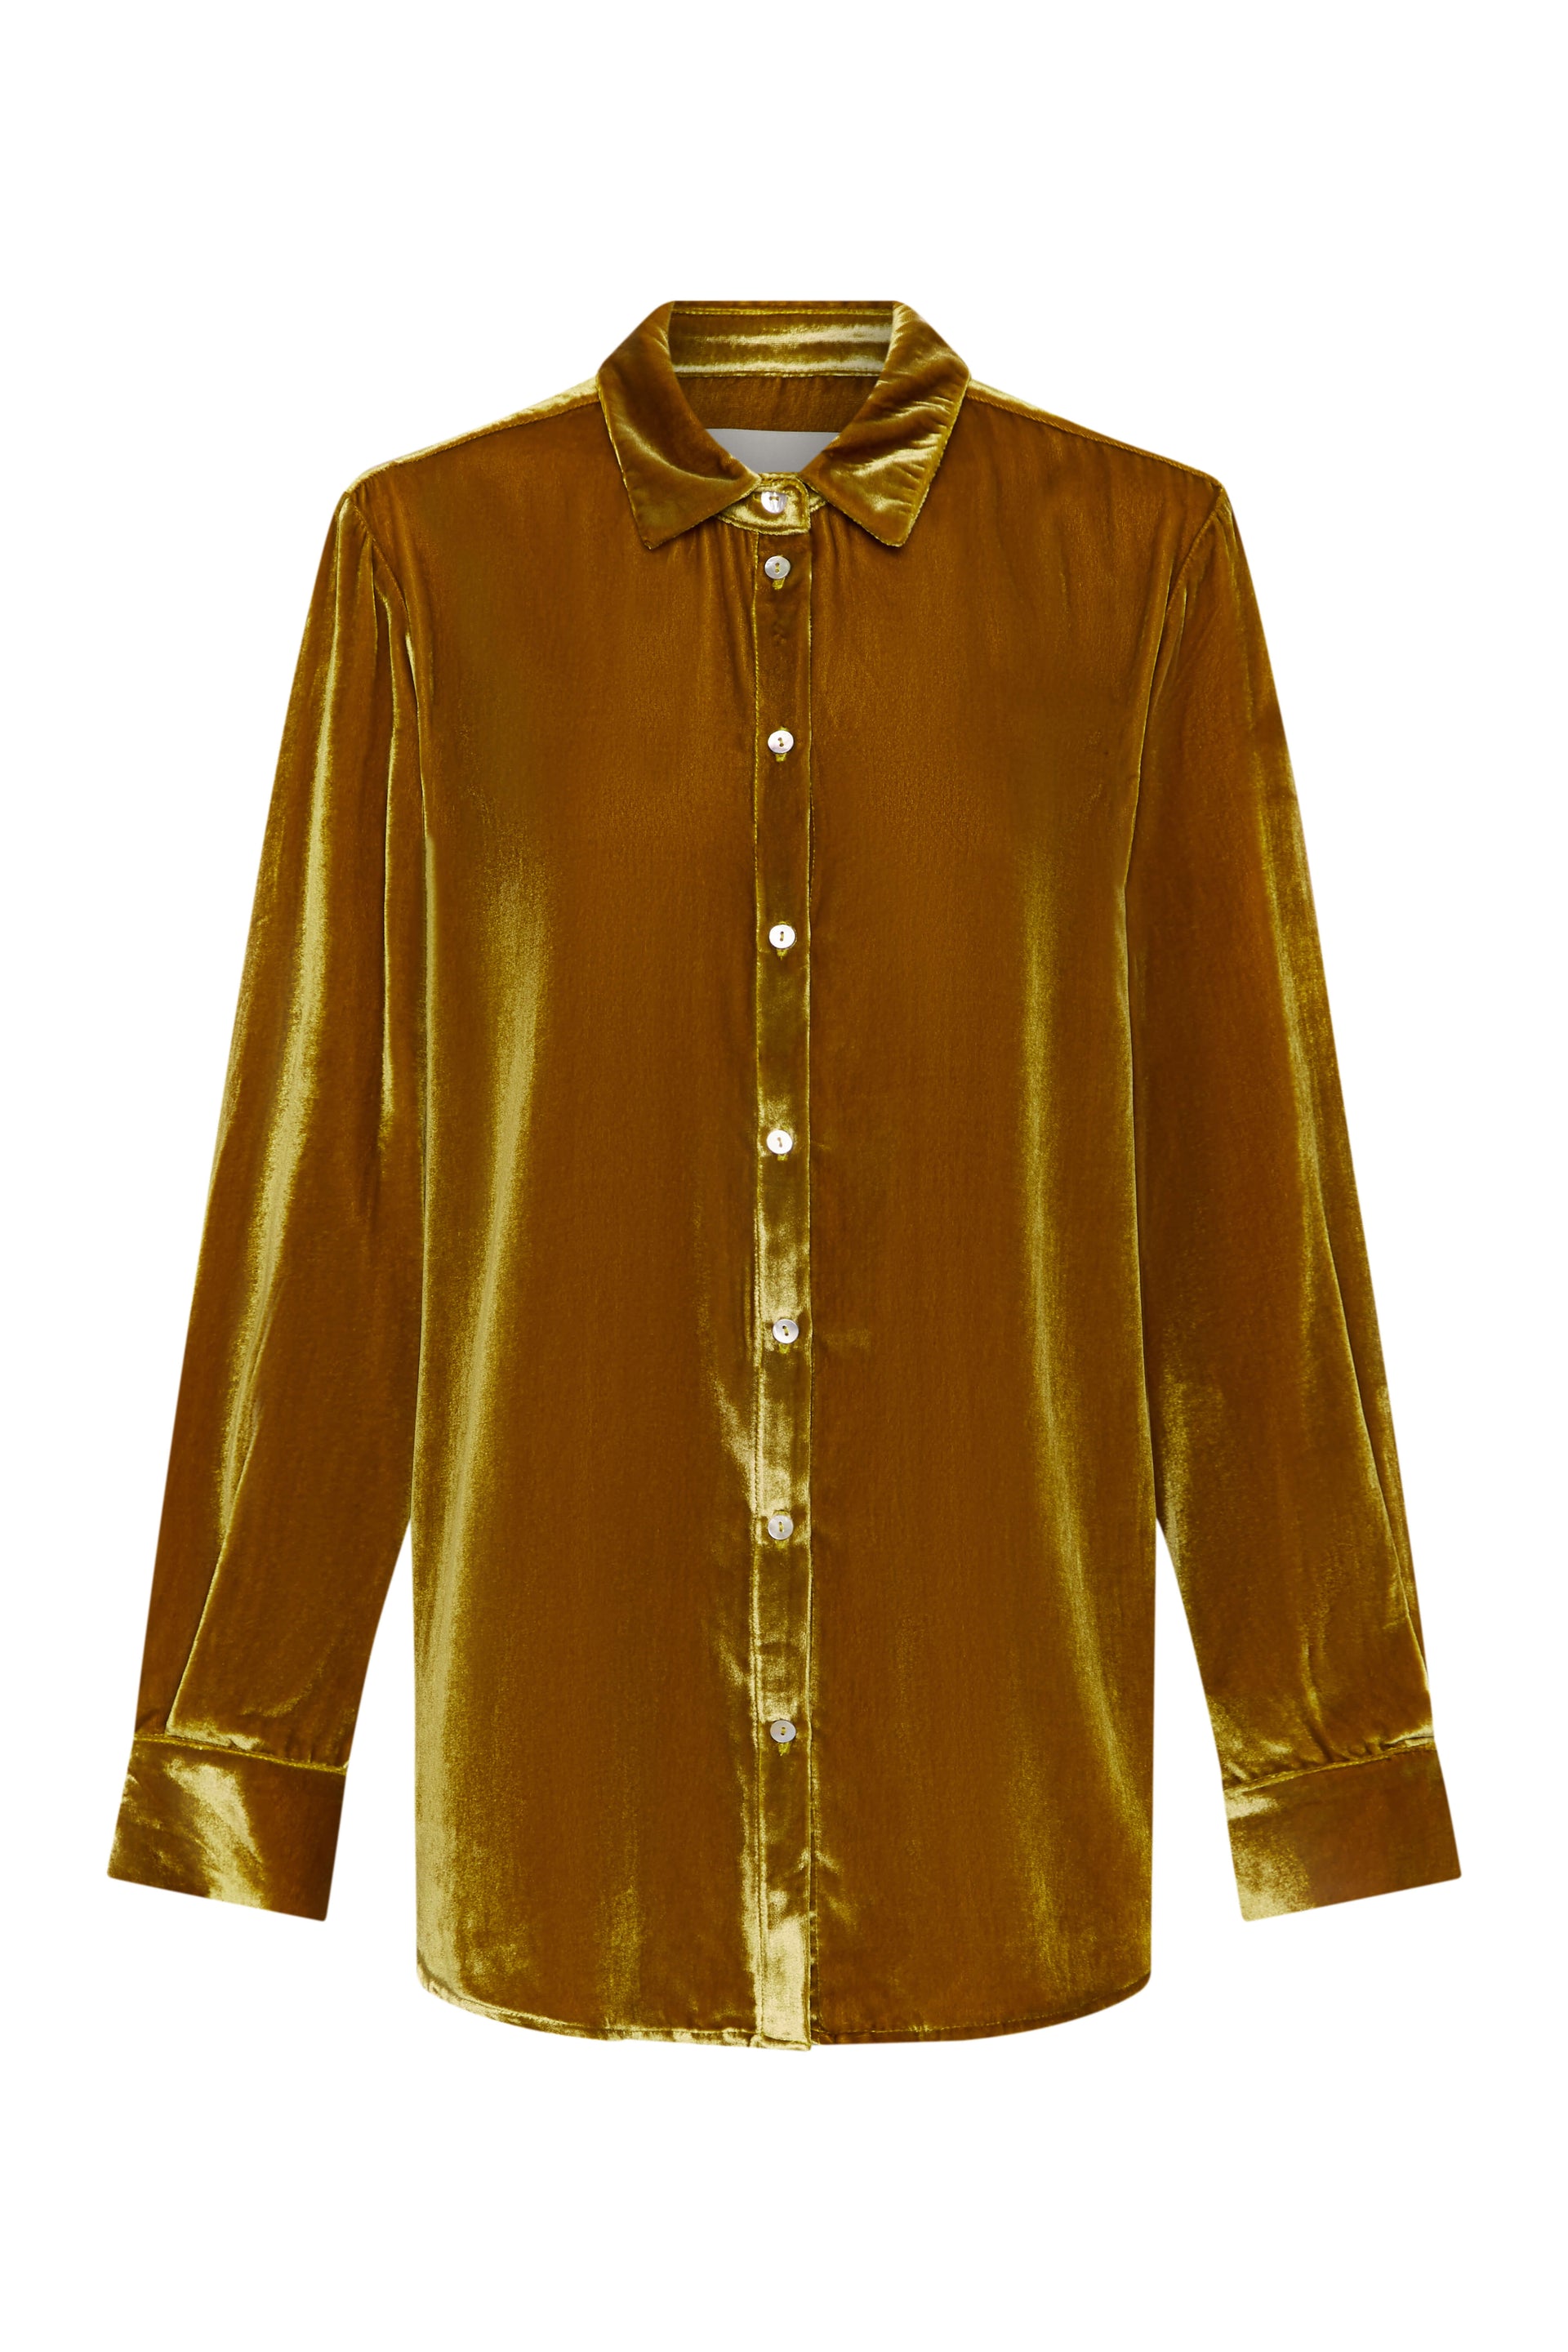 London Pyjama Top Gold Silk Velvet